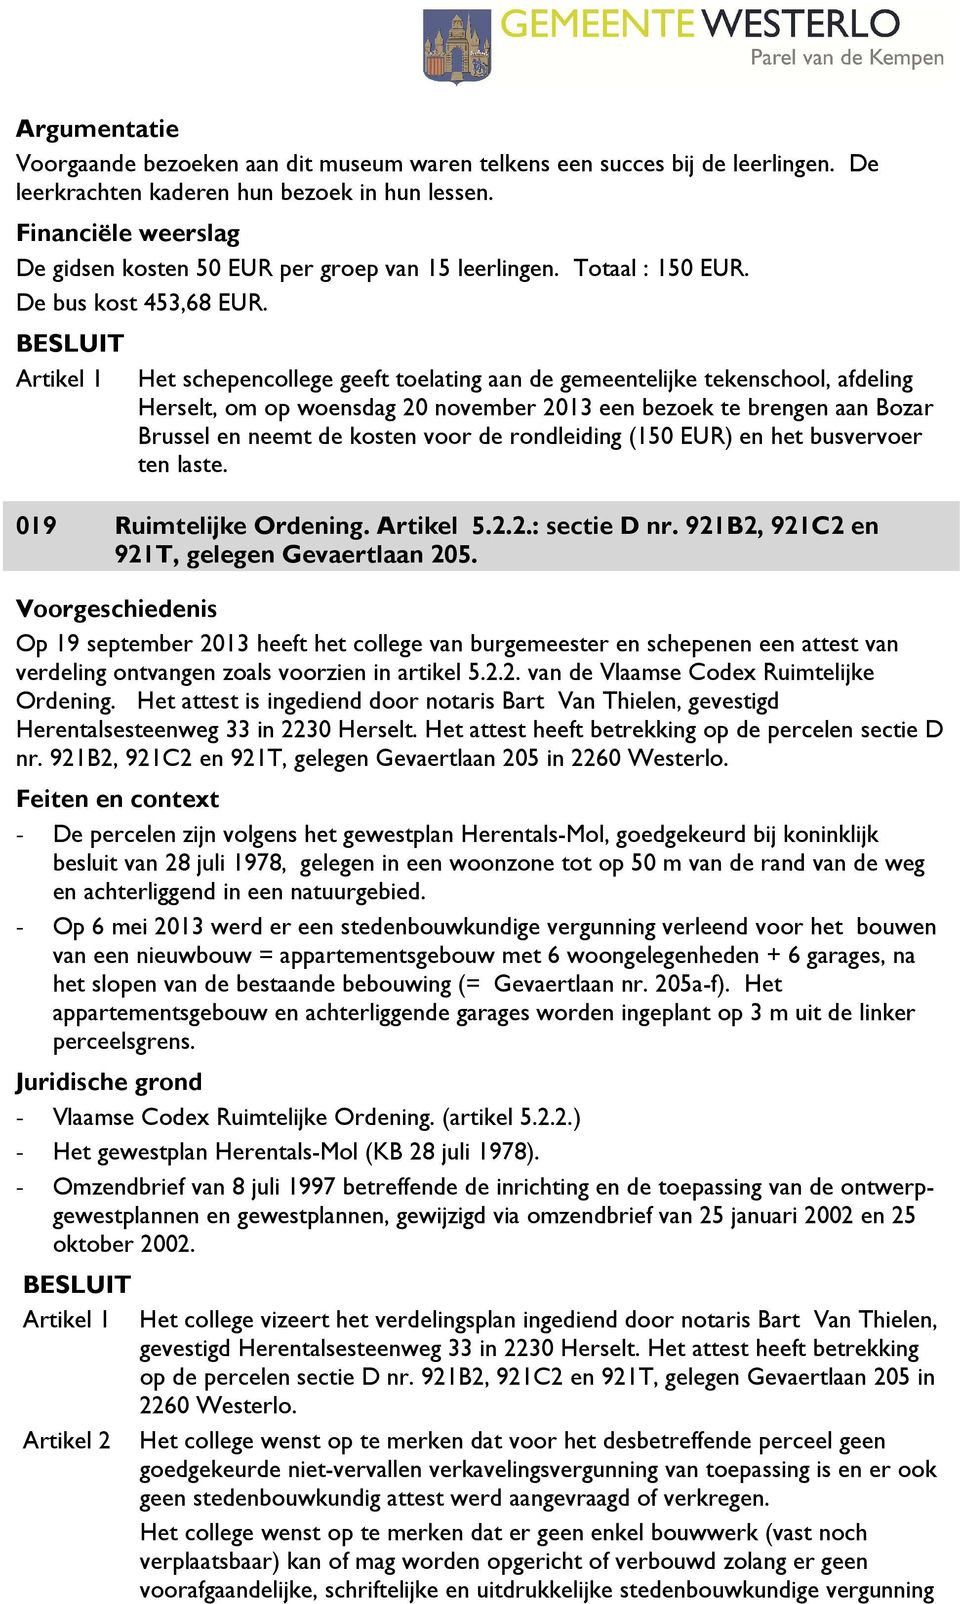 Het schepencollege geeft toelating aan de gemeentelijke tekenschool, afdeling Herselt, om op woensdag 20 november 2013 een bezoek te brengen aan Bozar Brussel en neemt de kosten voor de rondleiding